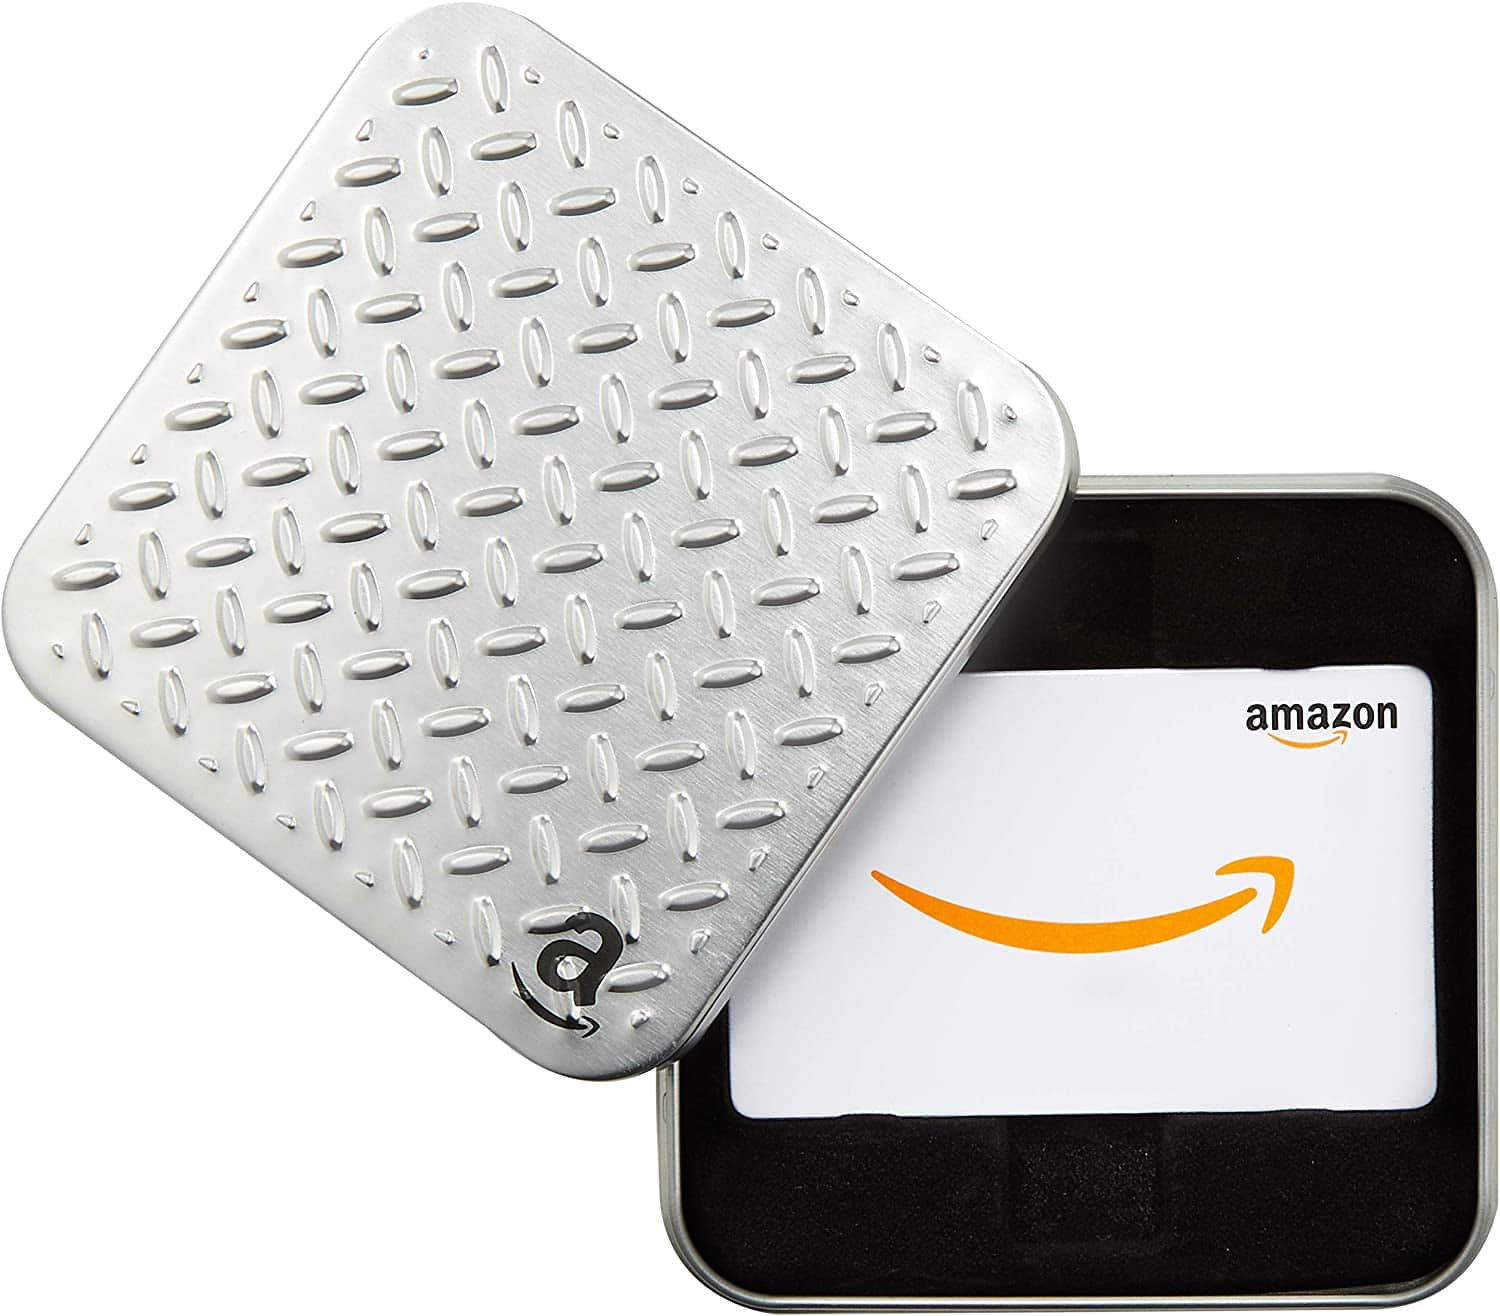 Amazonギフトカード(ボックスタイプ)